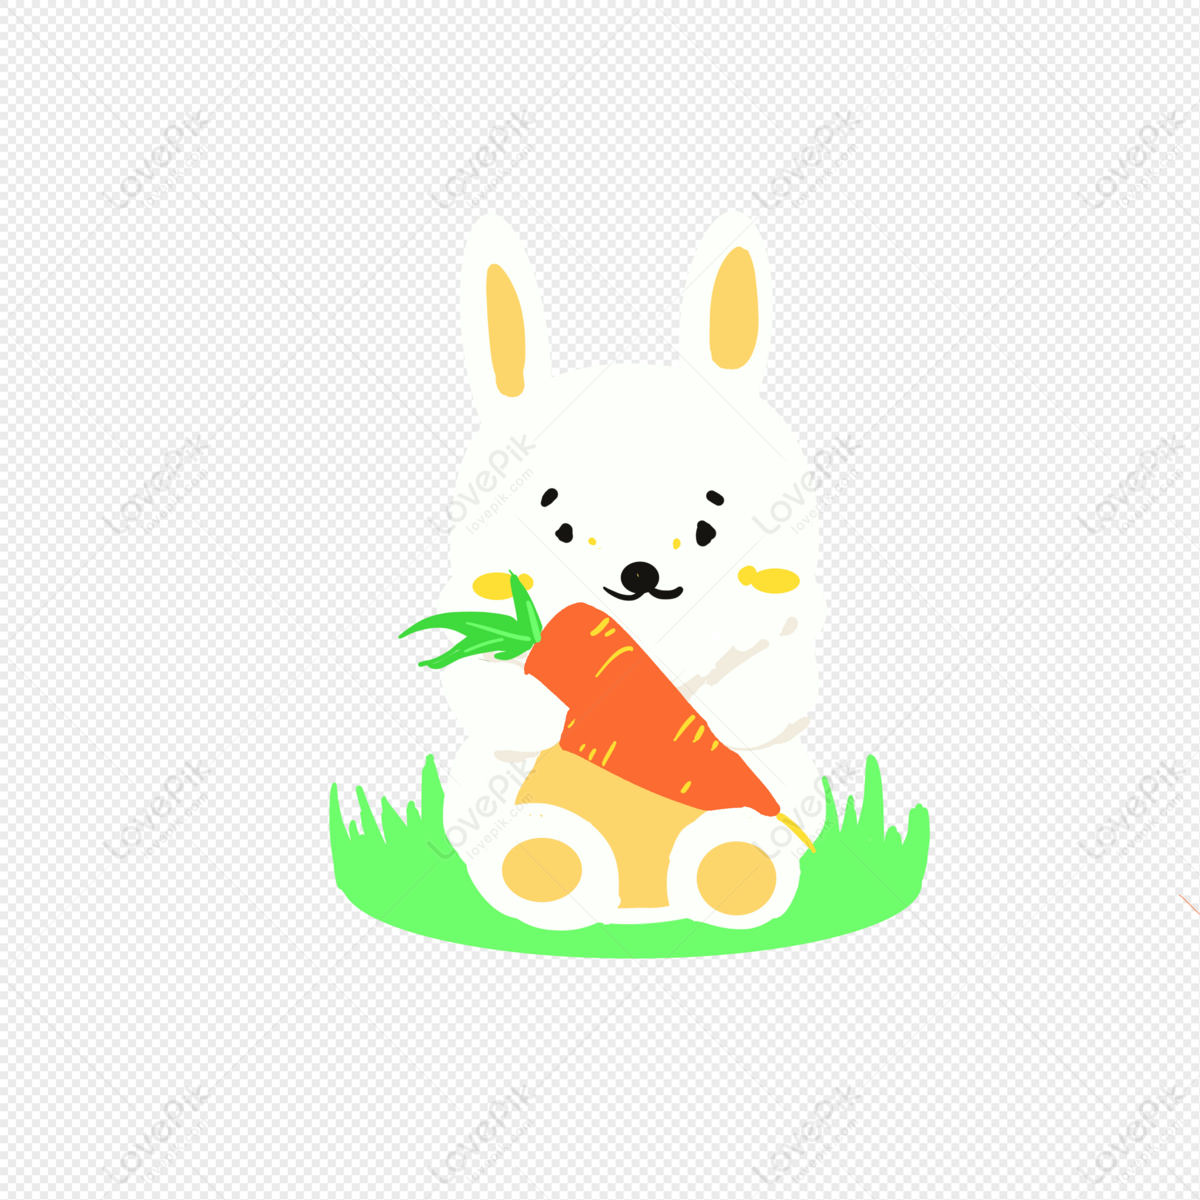 Hình ảnh Thỏ Cầm Cà Rốt: Bộ sưu tập hình ảnh thỏ cầm cà rốt này sẽ khiến bạn phải ngỡ ngàng với sự kết hợp tuyệt vời giữa độc đáo và dễ thương. Hãy đến đây để thư giãn và cảm nhận hết niềm vui.